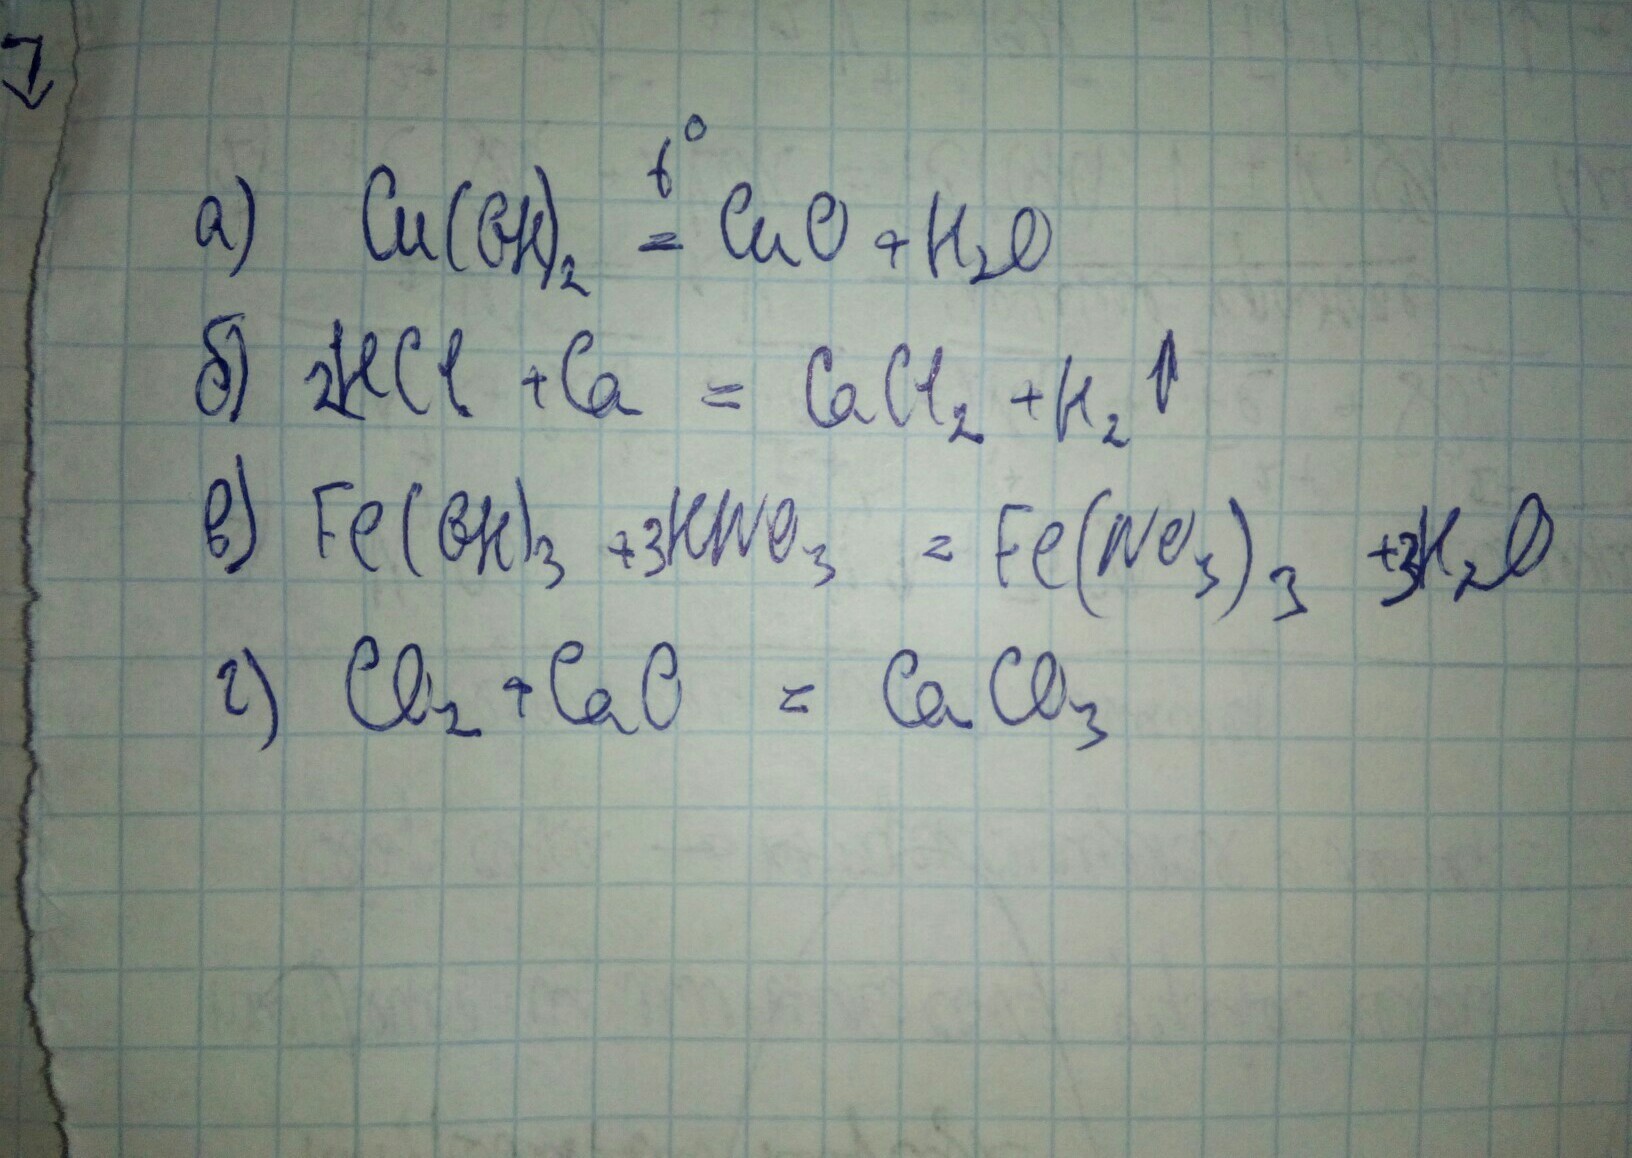 Ca hcl название. Fe(Oh)3 +HN. Feoh no3 =2 Fe Oh 3. Feoh3 hn03. CA Oh 2 HCL уравнение.